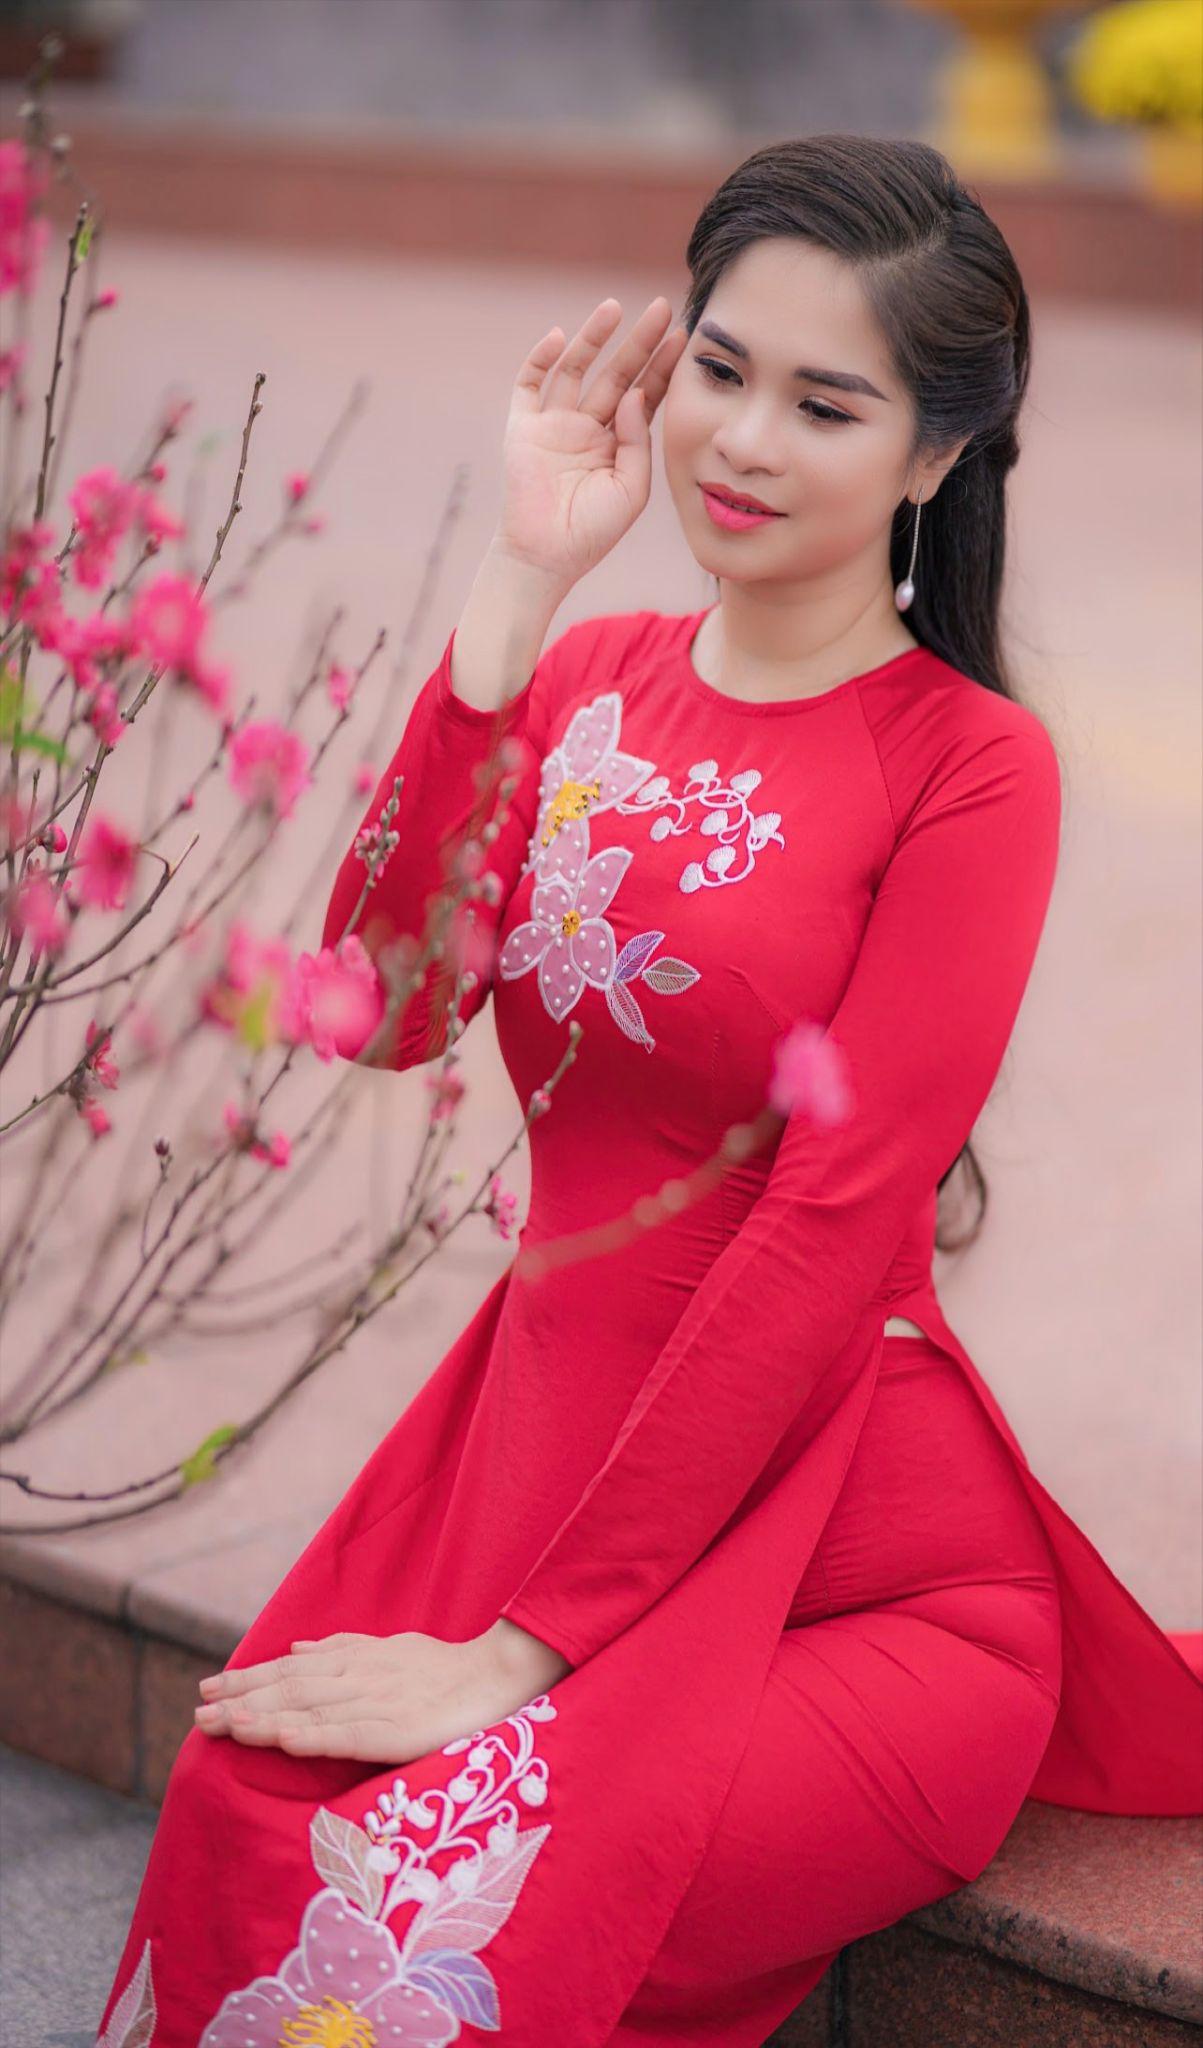 Chị Trang Lê và hành trình chinh phục niềm đam mê áo dài truyền cảm hứng - 1